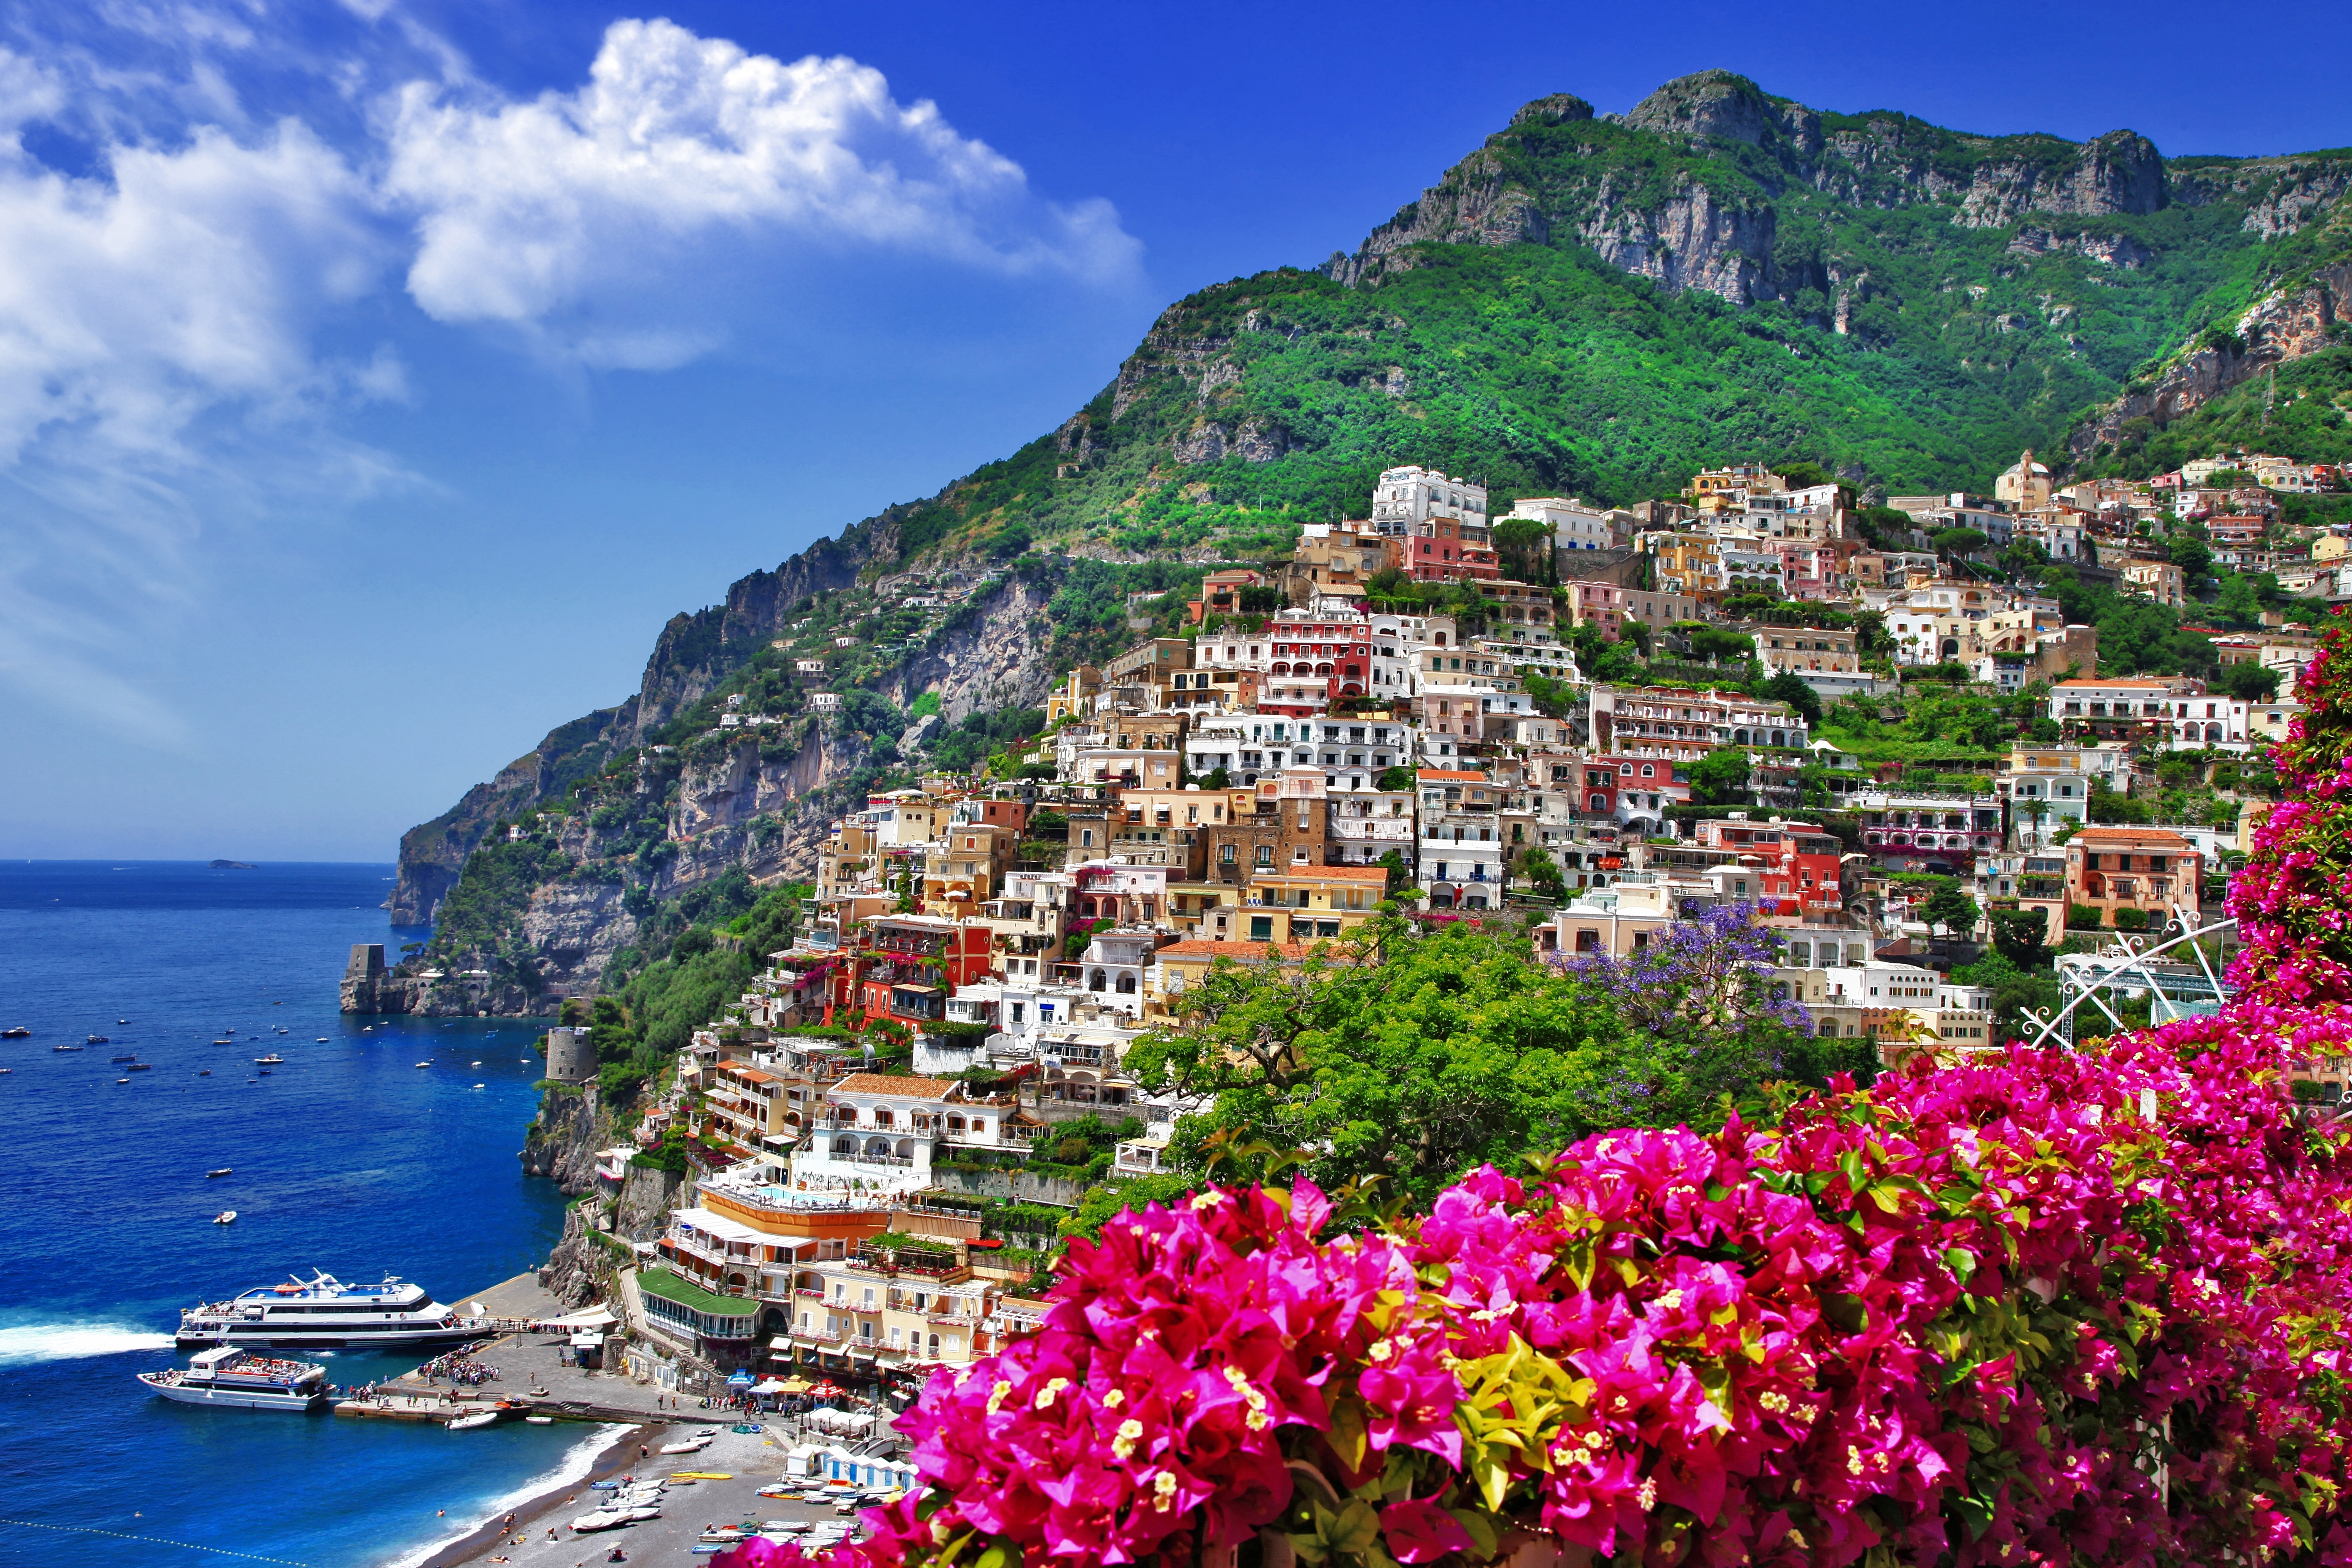 tourhub | Exodus | Highlights of the Amalfi Coast | AVG